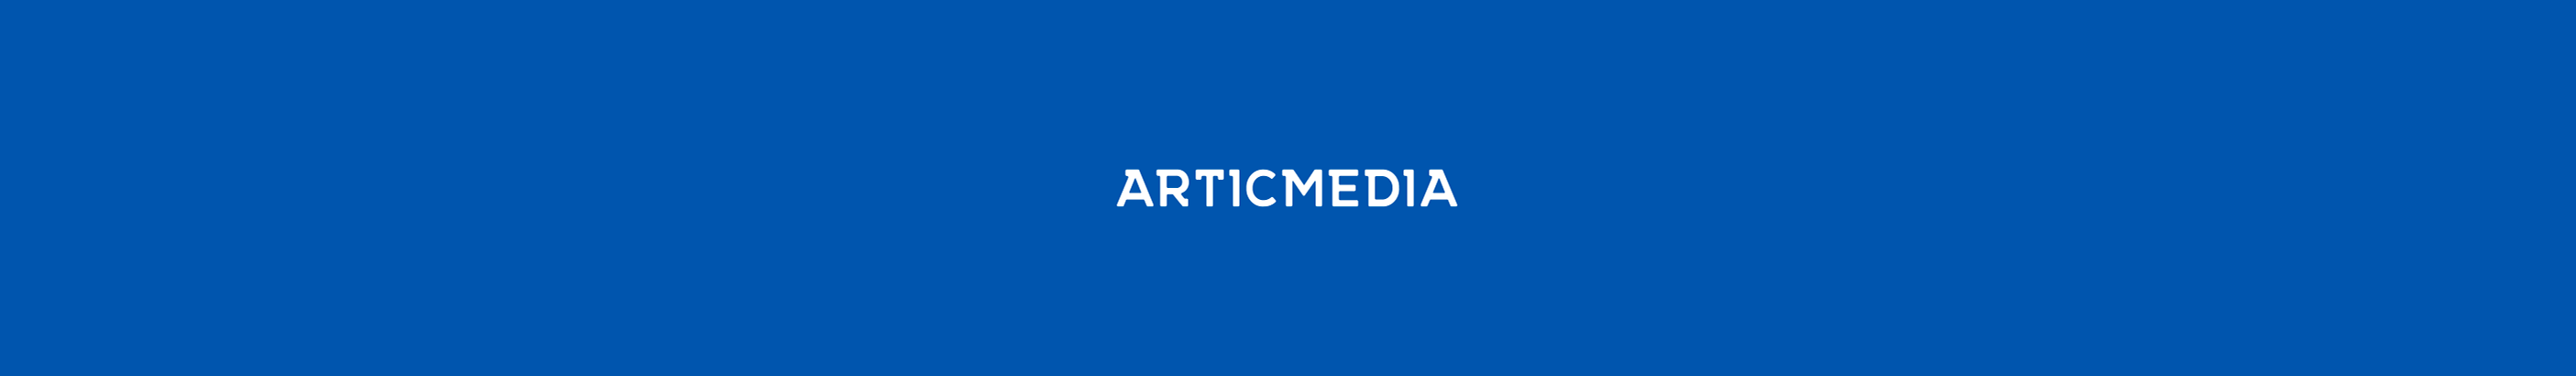 ArticMedia studio's profile banner